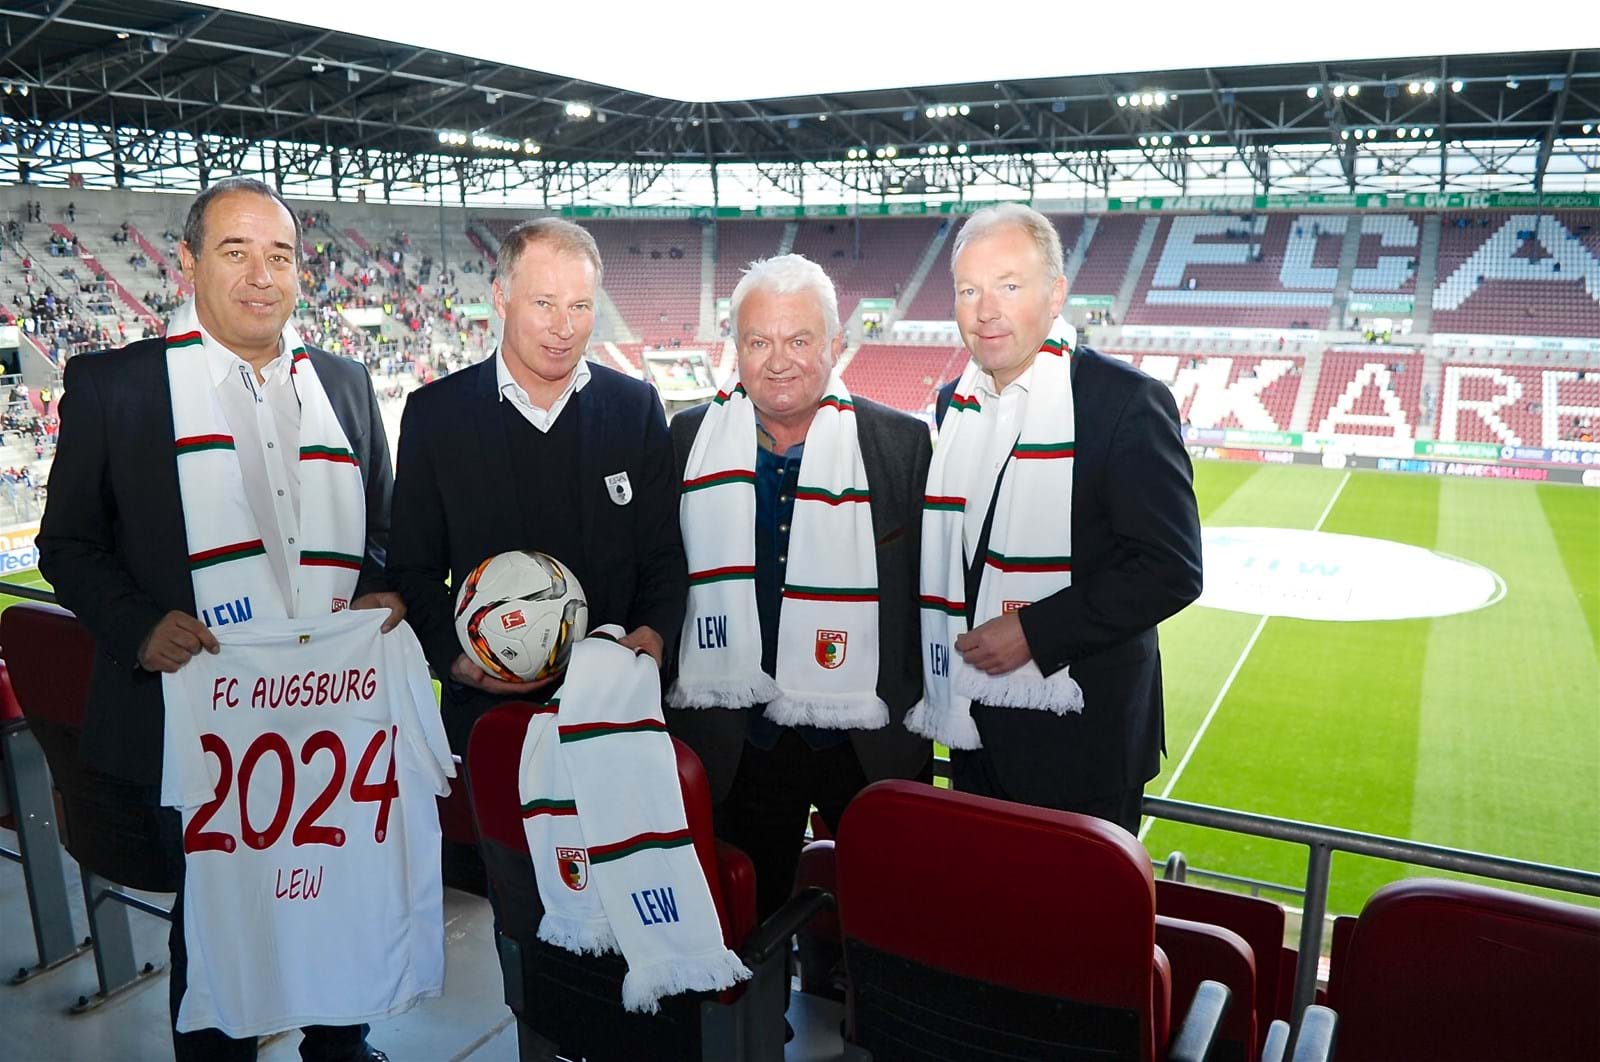 Freuen sich auf die weitere Zusammenarbeit (v.l.n.r.): Rainer Müller, LSC-Geschäftsführer, Stefan Reuter, FCA-Geschäftsführer Sport, Peter Bircks, FCA-Aufsichtsratsvorsitzender, und Norbert Schürmann, LEW-Vorstand.